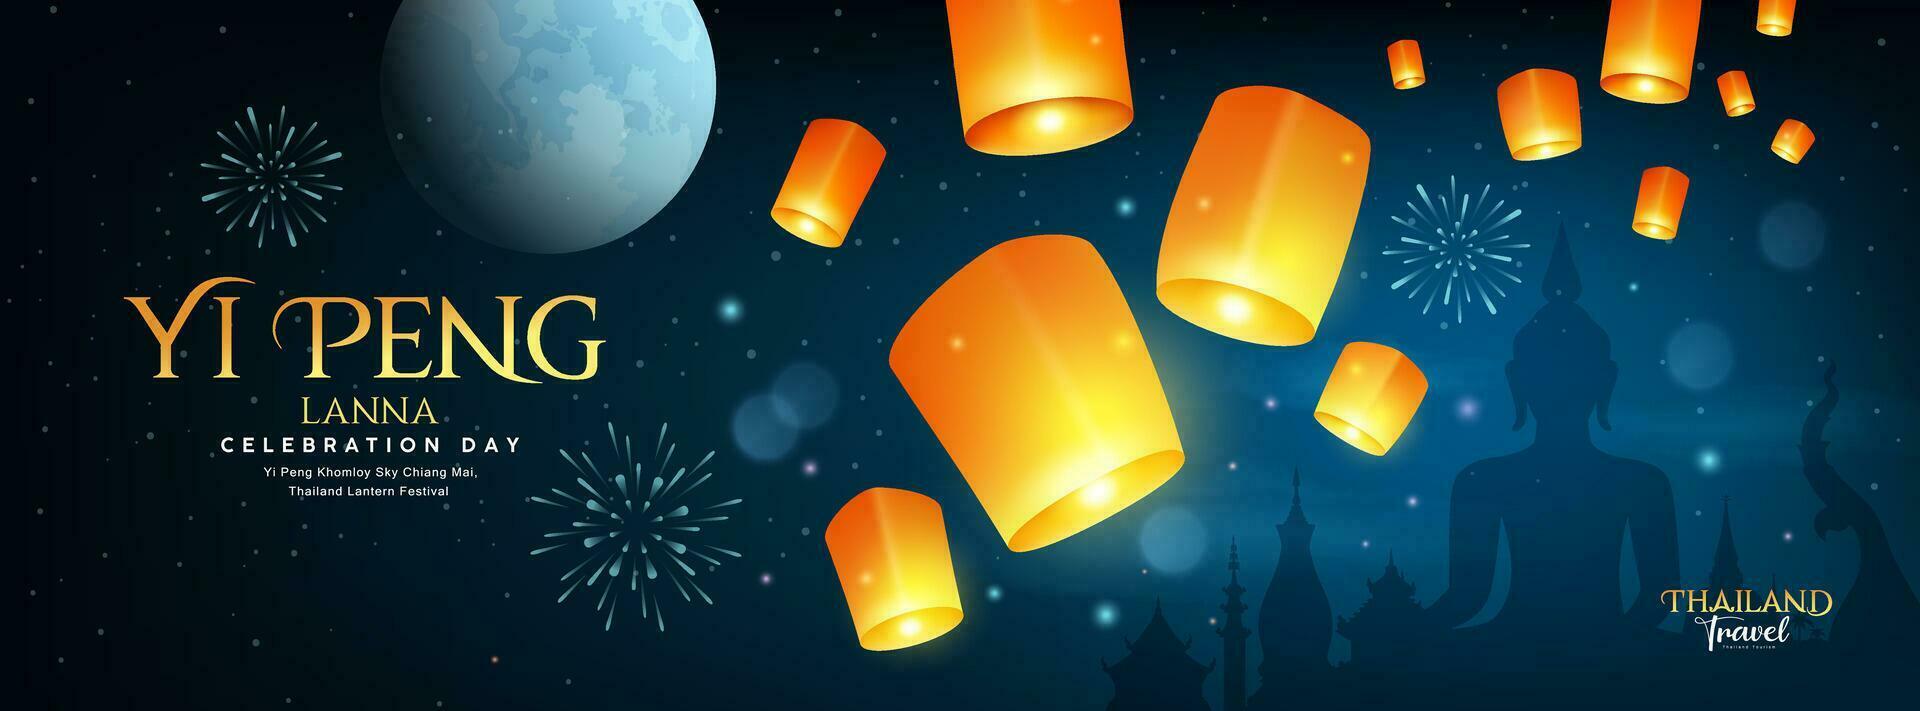 drijvend lantaarn, loy krathong en yi peng lantaarn festival in Chiang mei, Thailand, banier Aan vol maan en vuurwerk oprichten nacht achtergrond, eps 10 vector illustratie